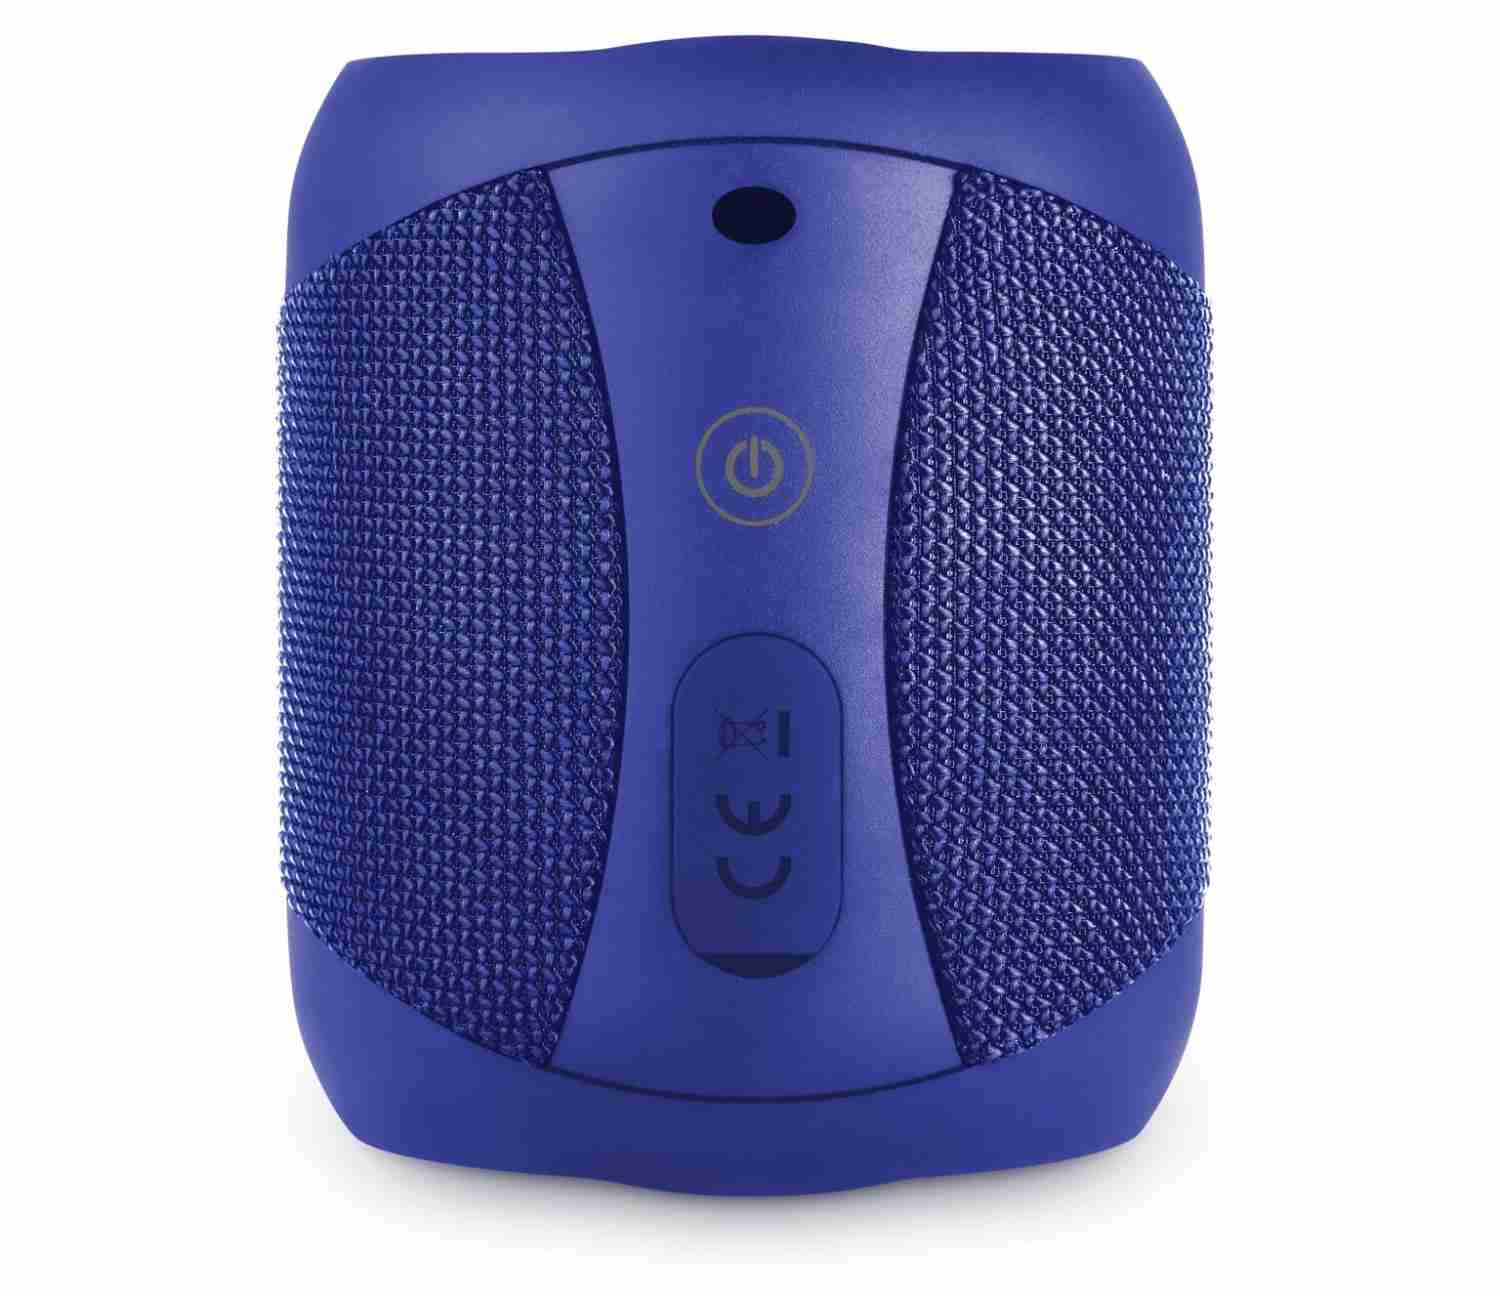 HiFi Drei neue Bluetooth-Lautsprecher von Sharp - Sprachsteuerung an Bord - News, Bild 2